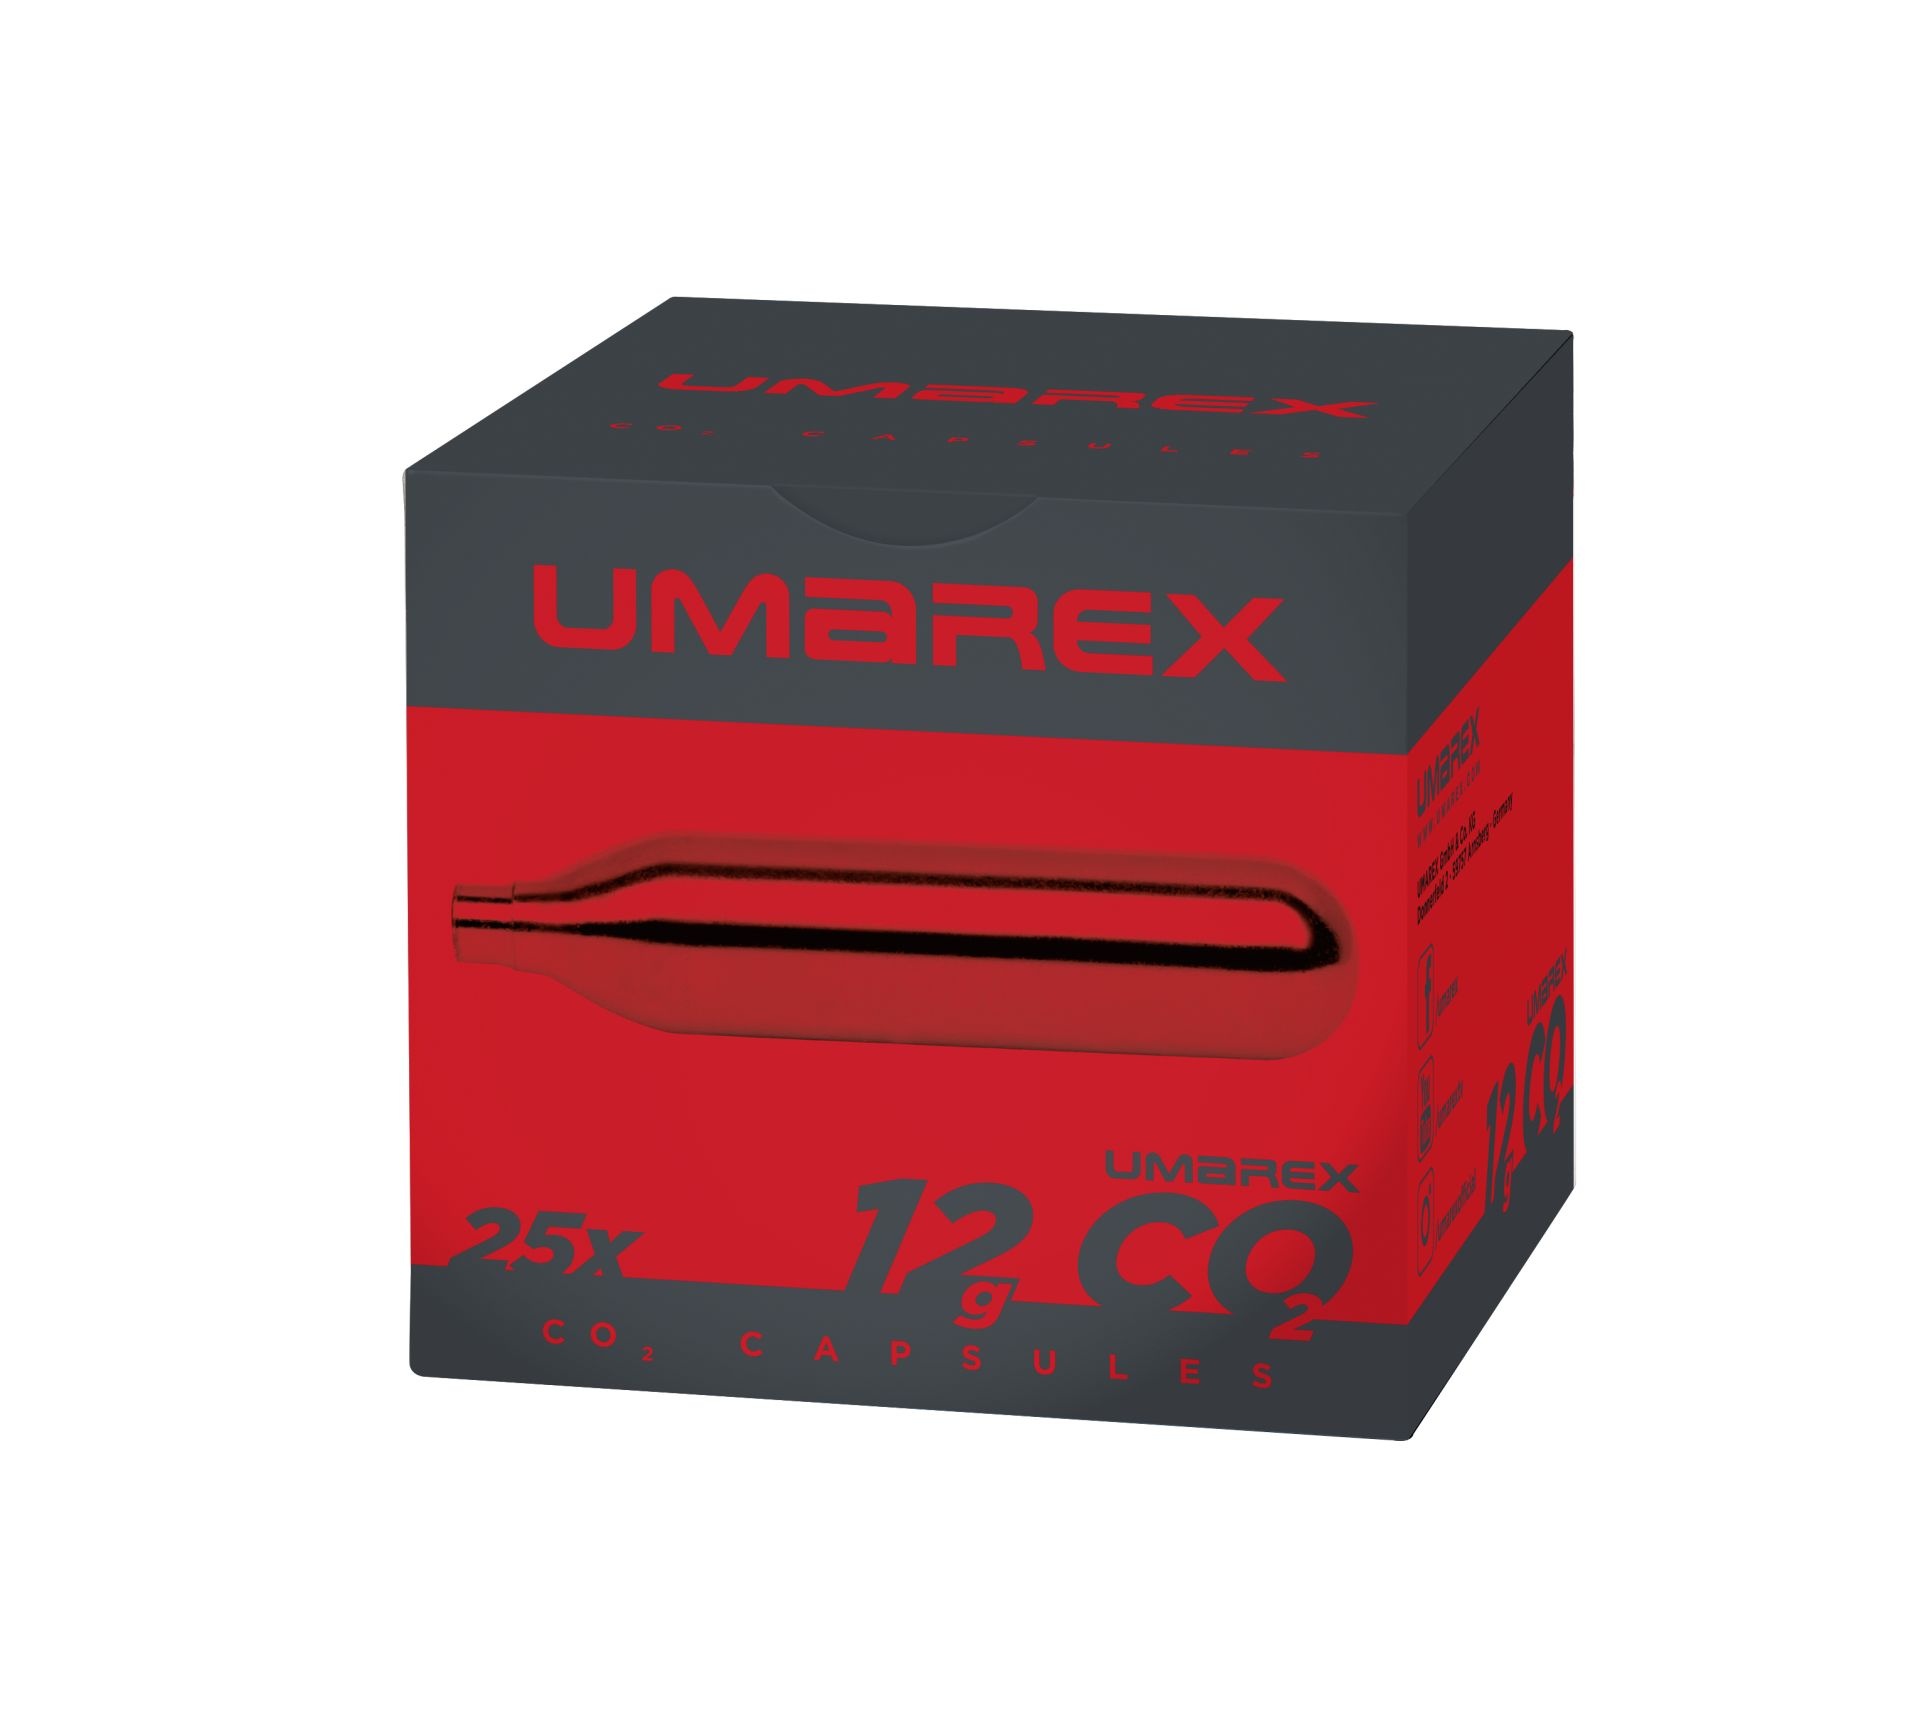 Umarex - Capsule CO2 12g